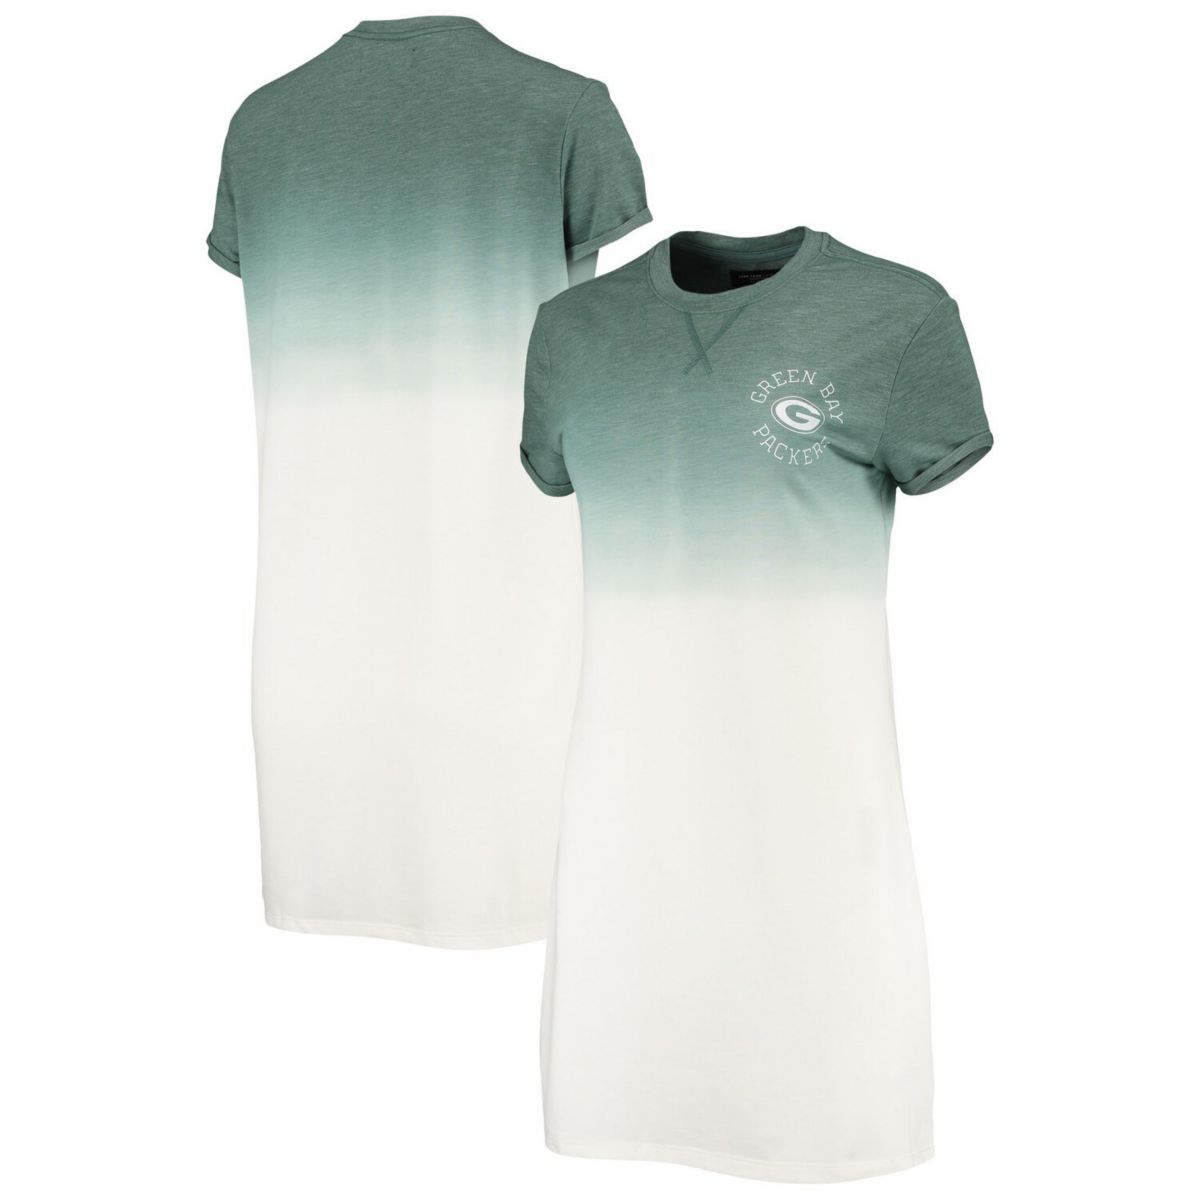 Женское платье-футболка Green Bay Packers с эффектом омбре, меланжевое, зелено-белое, с эффектом омбре Unbranded